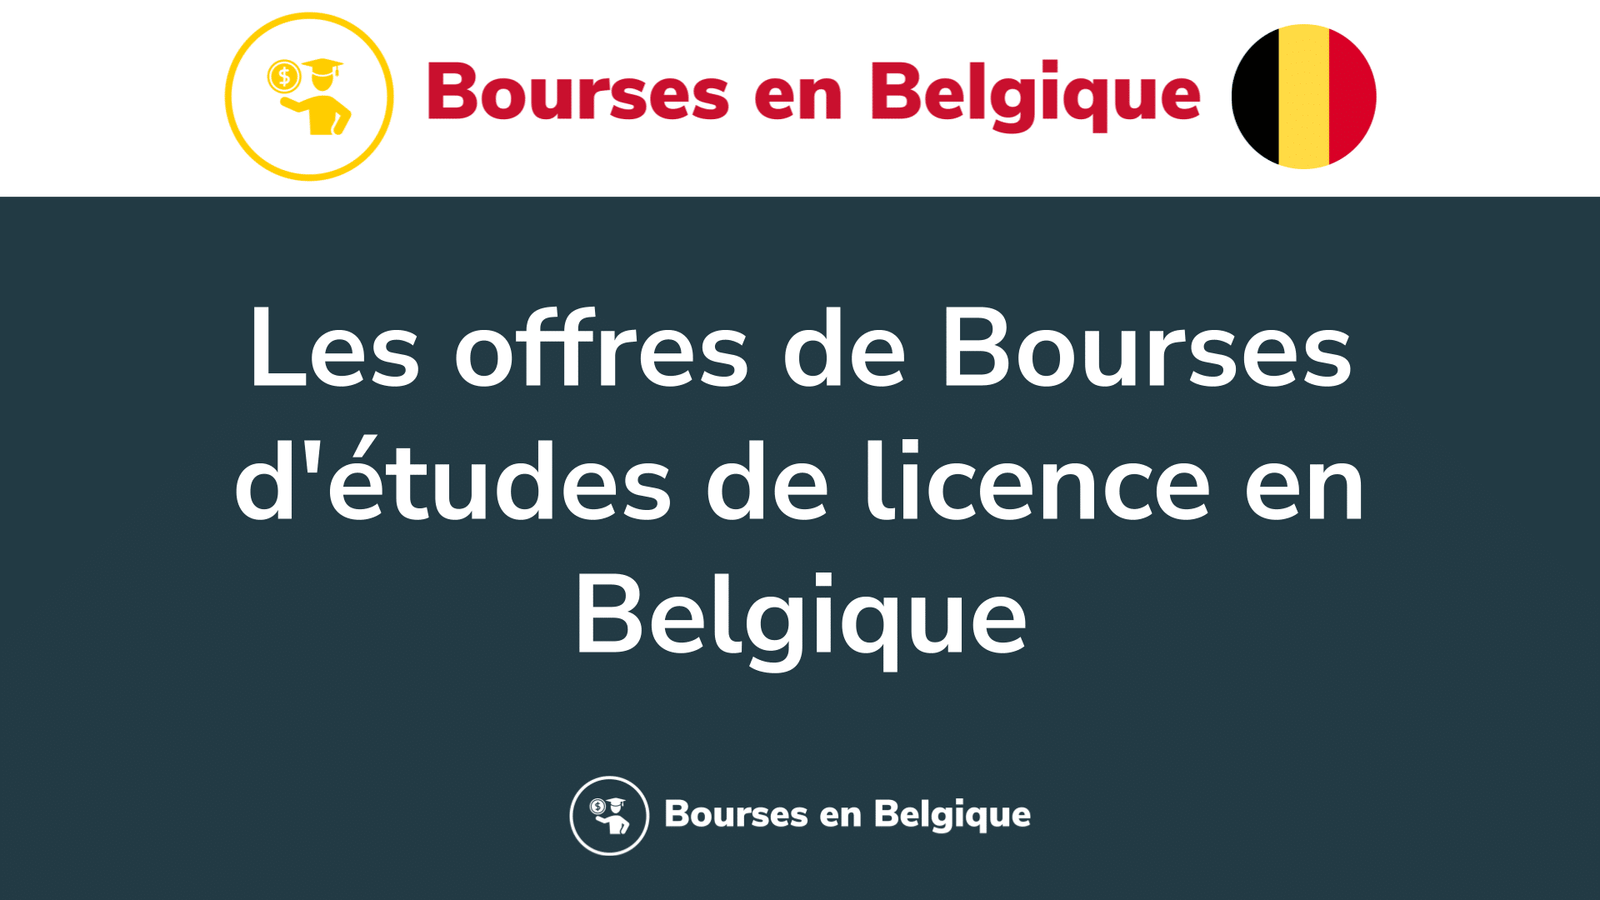 Les offres de Bourses d'études de licence en Belgique